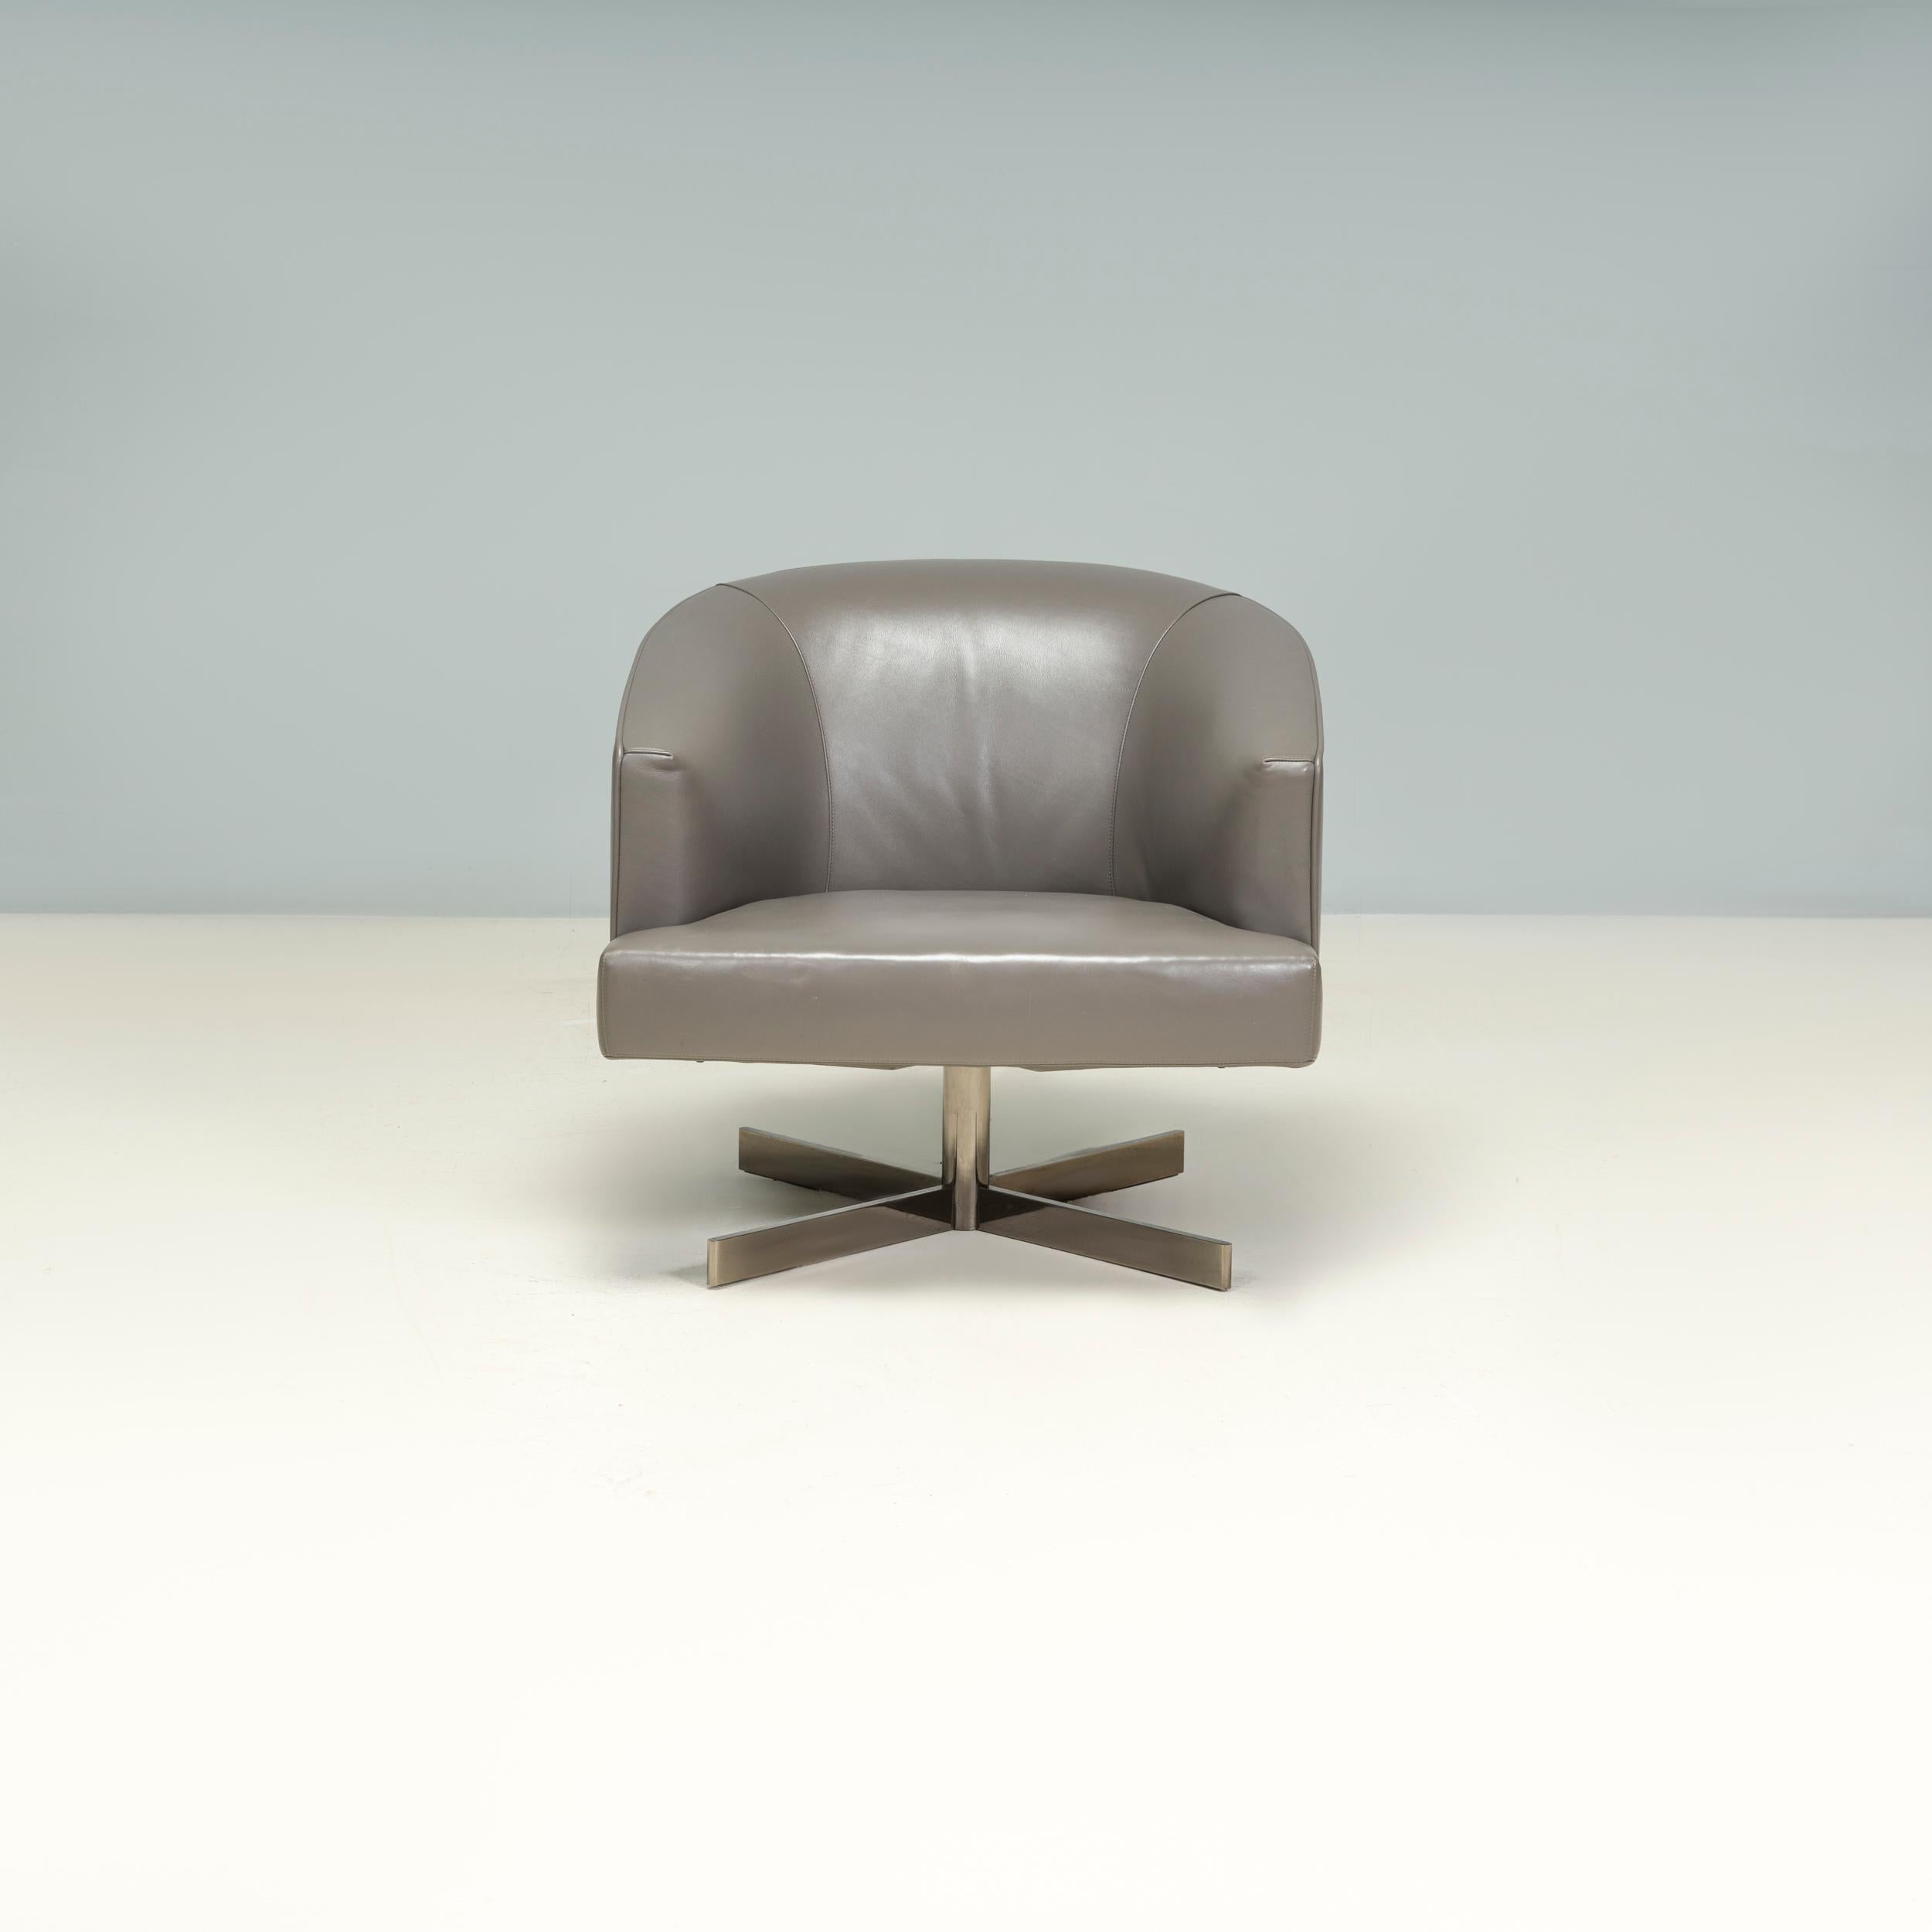 Conçu par Rodolfo Dordoni pour Minotti, le fauteuil Martin est un exemple fantastique de l'élégance du design italien contemporain.

Dotée d'un coussin d'assise carré et d'un dossier légèrement incurvé, la chaise est entièrement recouverte de cuir